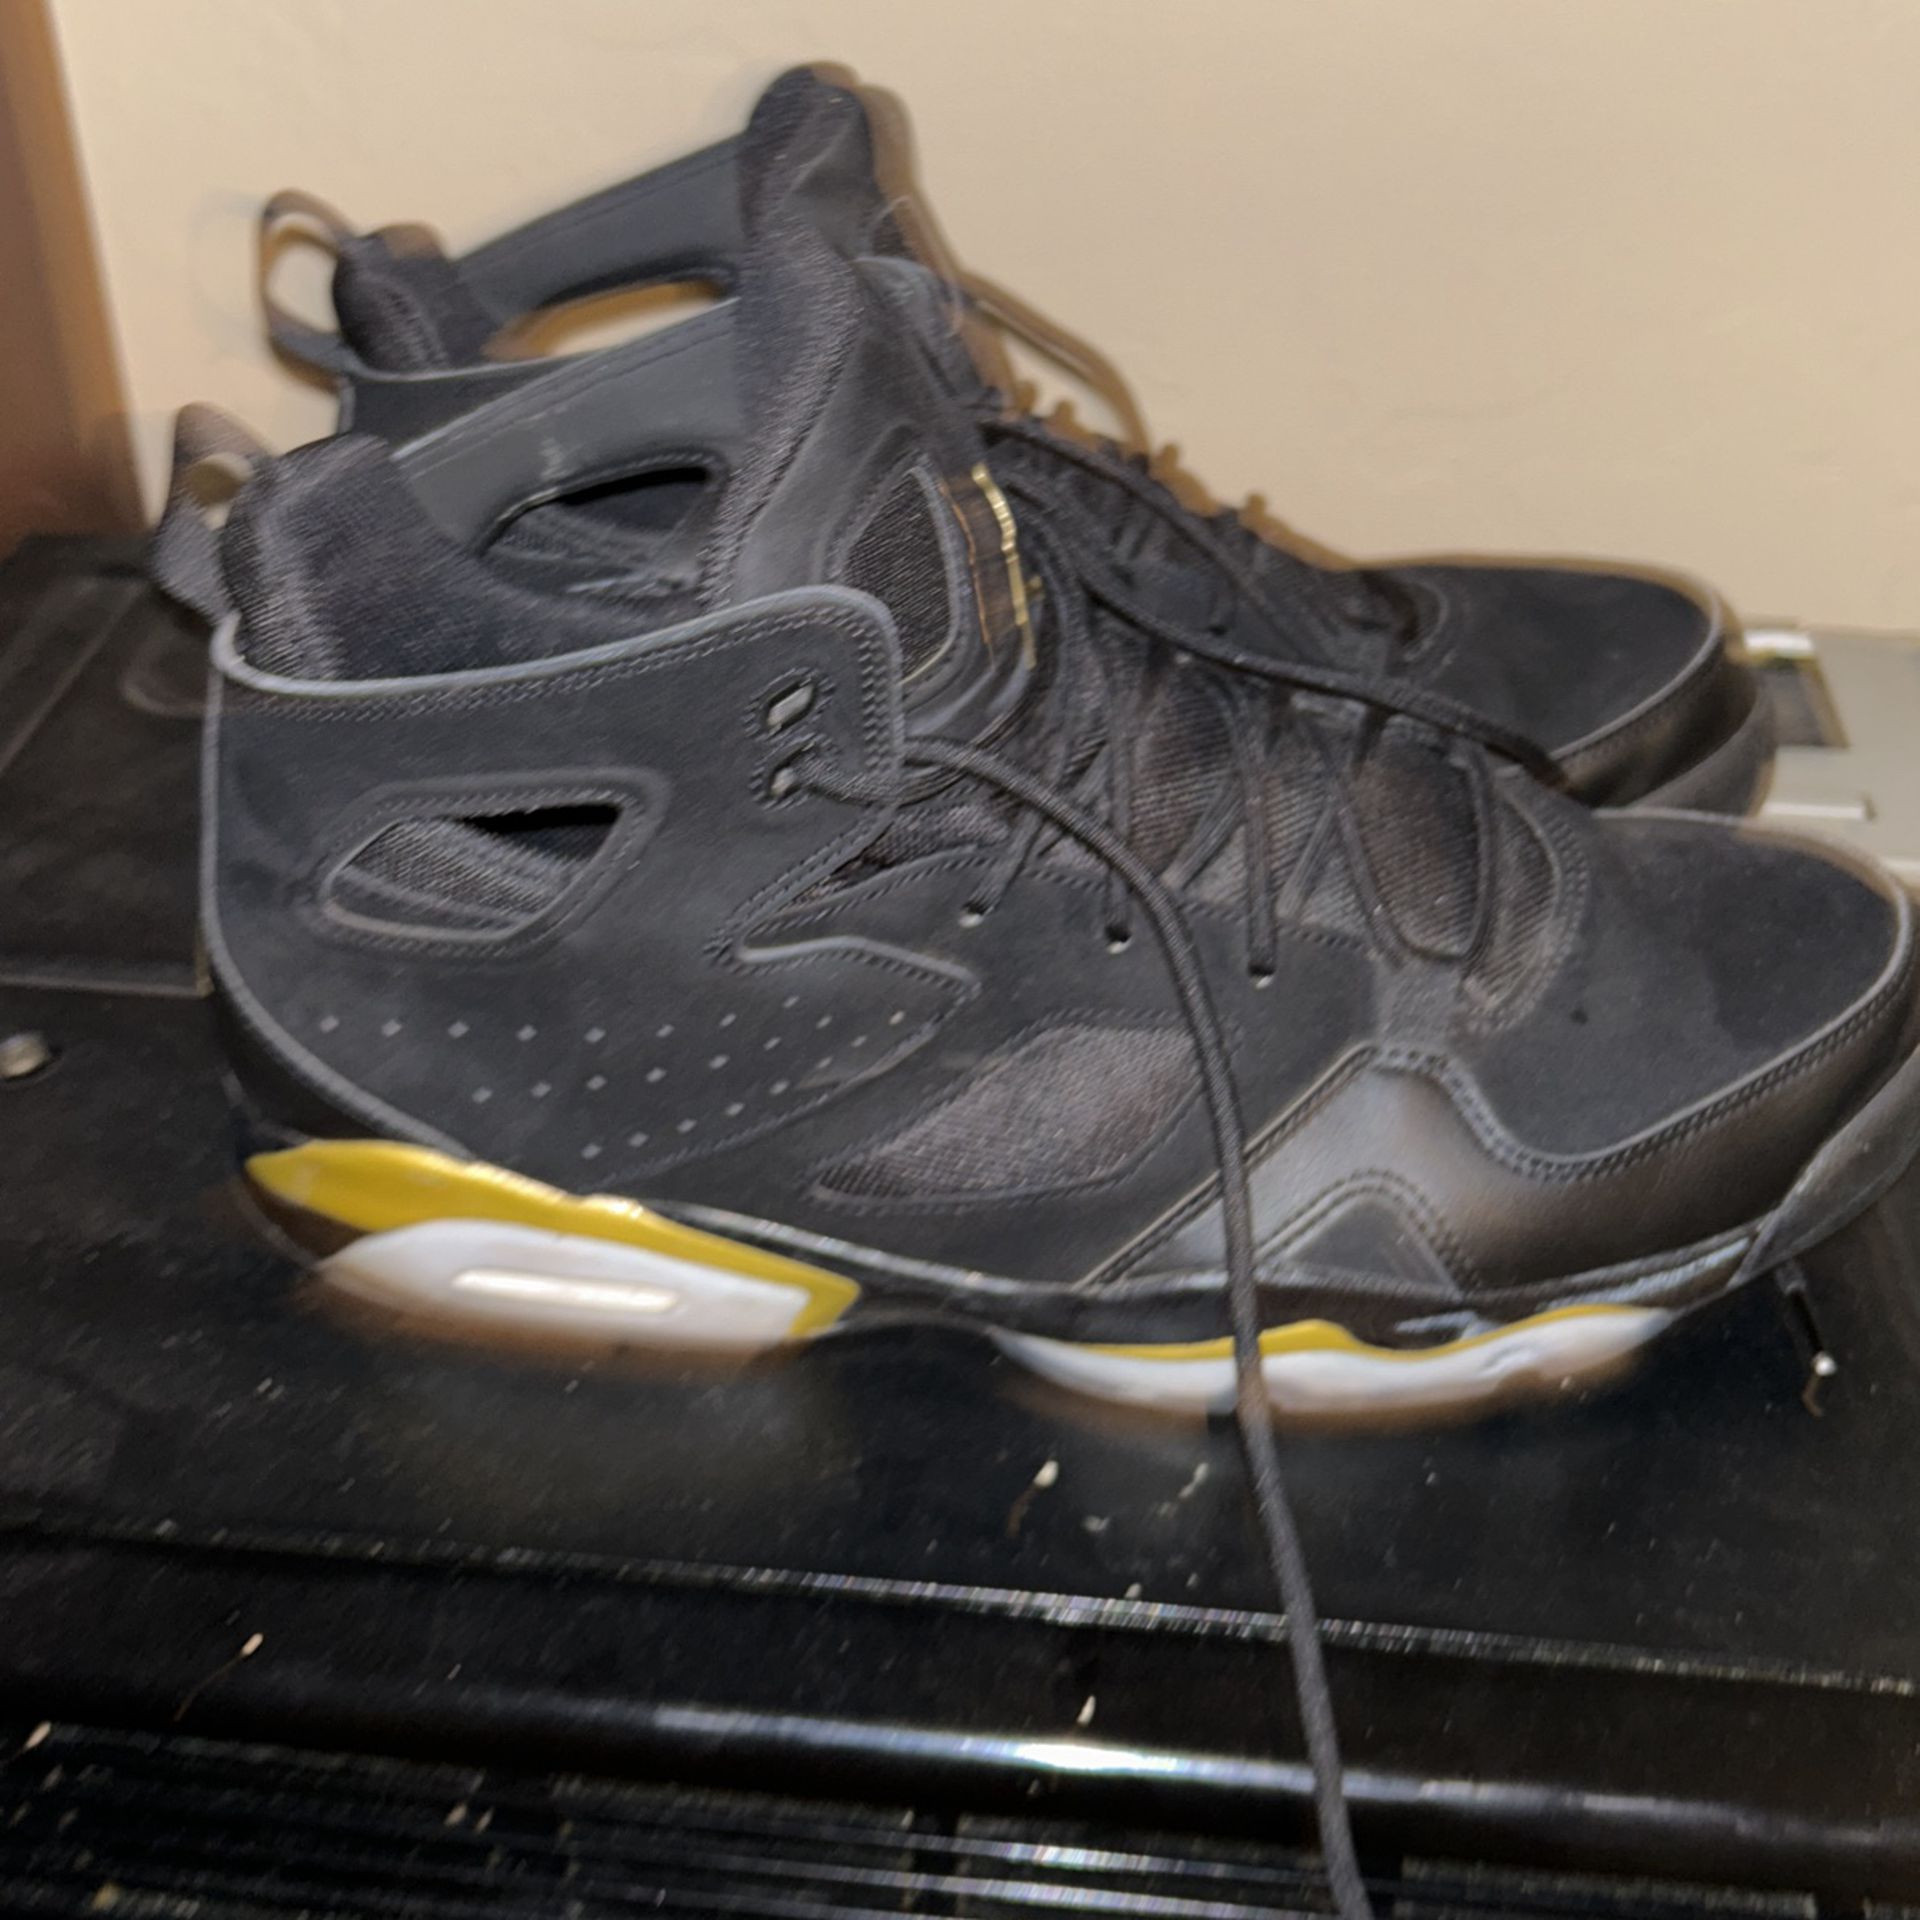 Retro Jordans Size 13